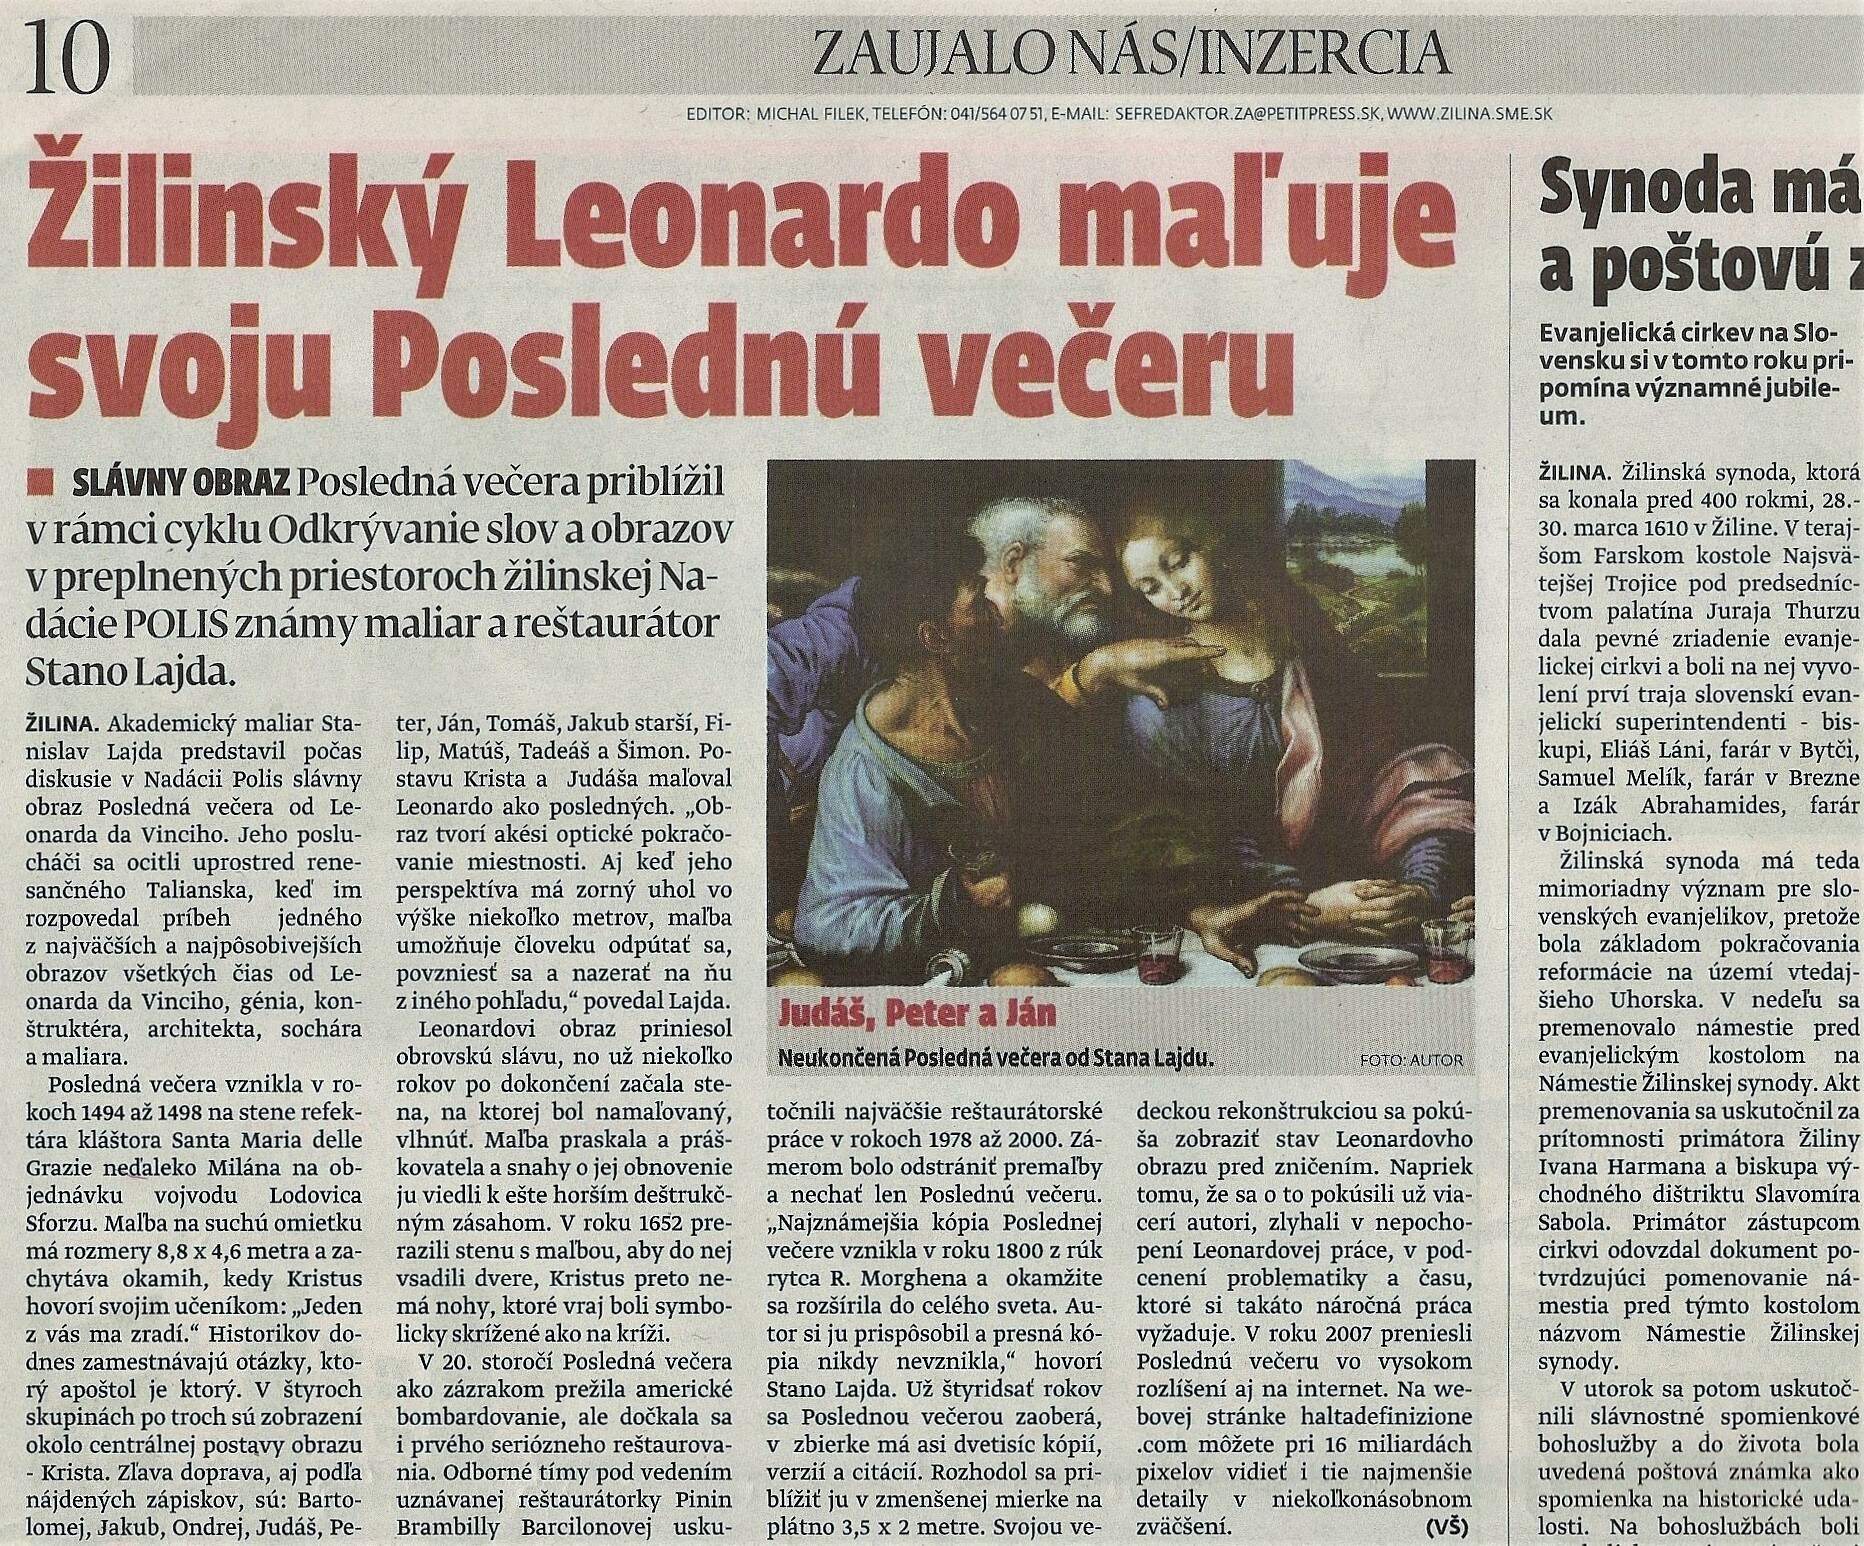 2010, 6. 4. - 11. 4., MY - žilinské noviny, roč. 11, č. 13, str. 10